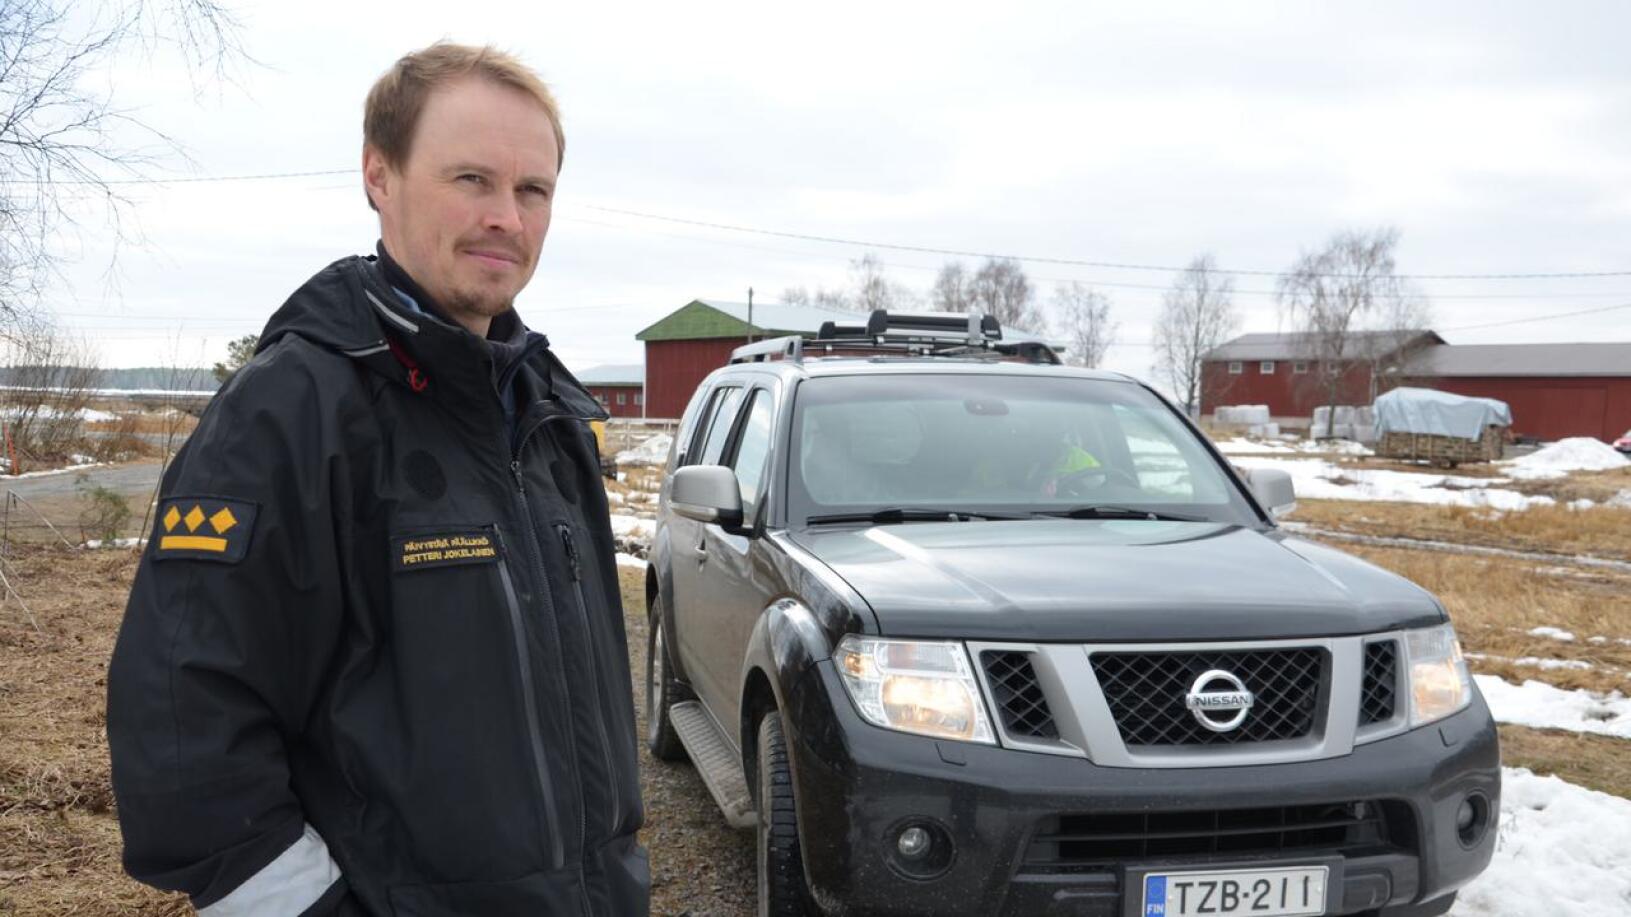 Pohjois-Pohjanmaan aluehallitus valitsi hyvinvointialueen pelastusjohtajaksi Jokilaaksojen pelastuslaitoksen pelastuspäällikön Petteri Jokelaisen